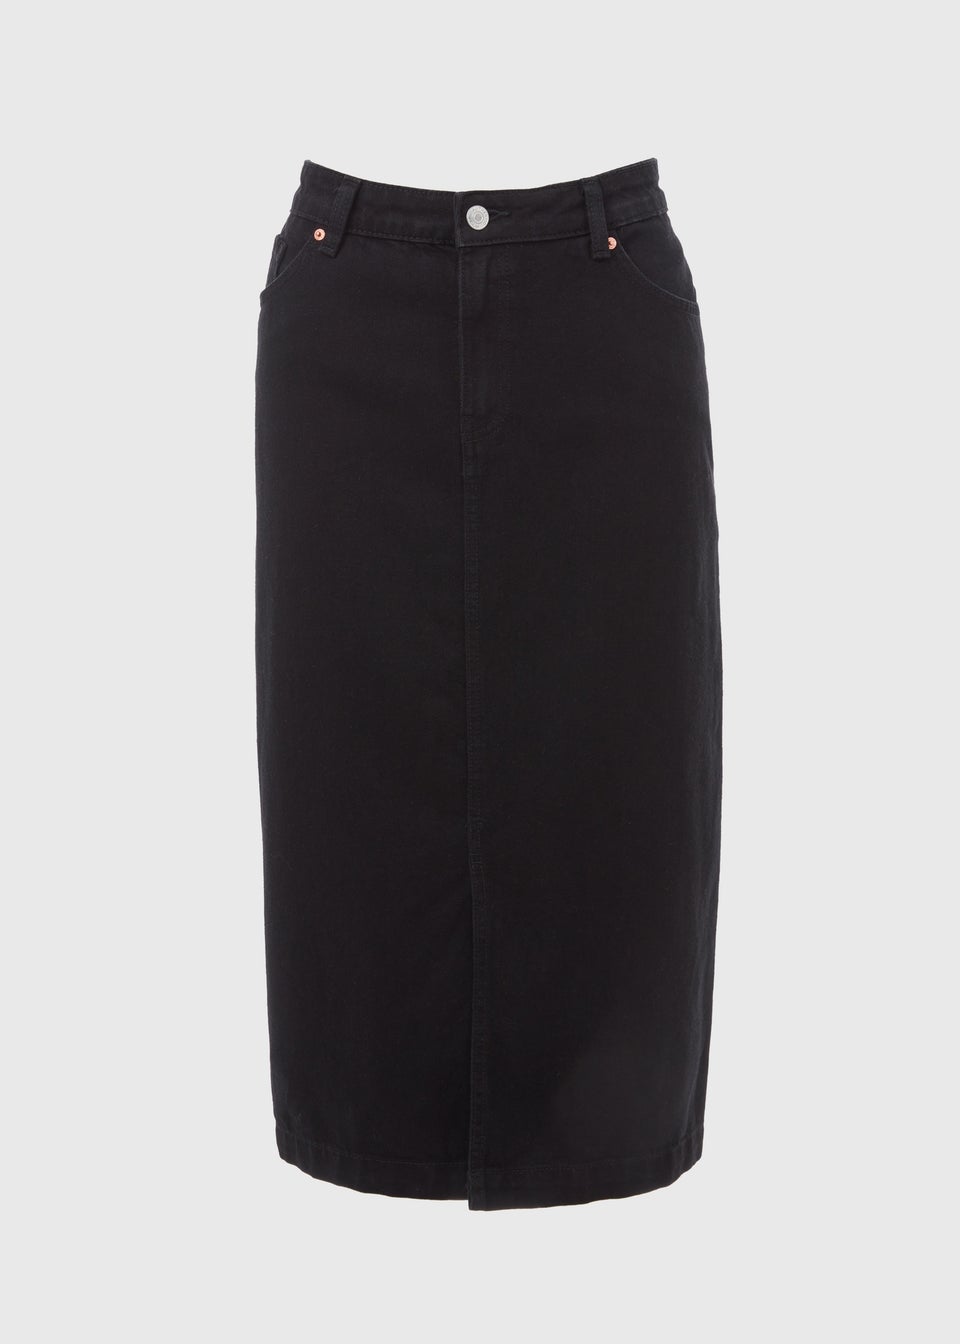 Papaya Petite Black Denim Midi Skirt - Matalan